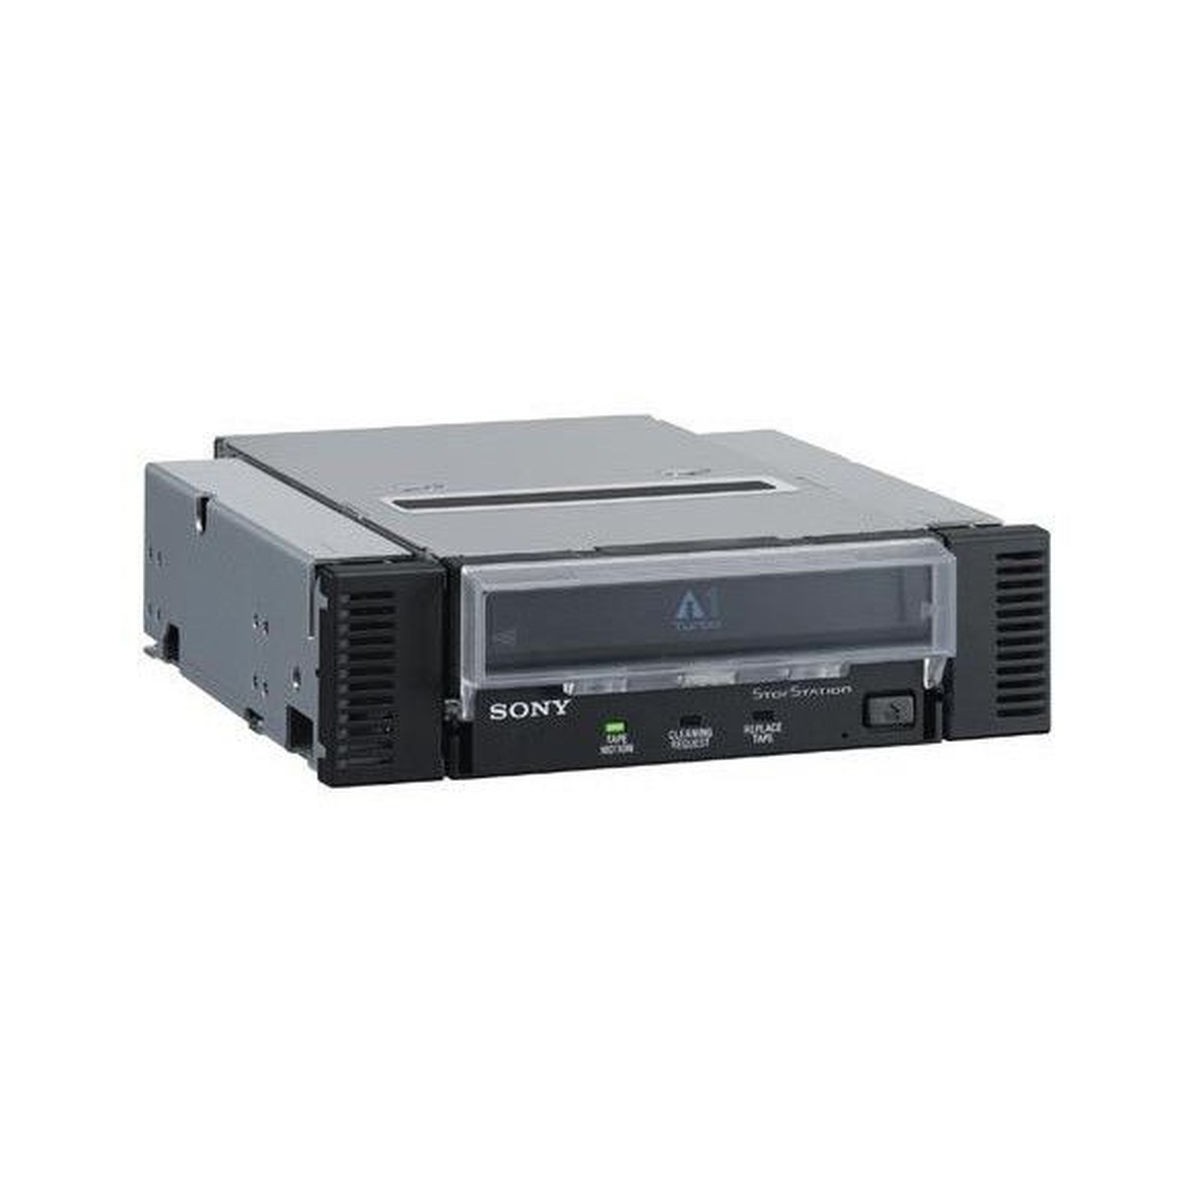 SONY SDX-450V STREAMER 40/104GB AIT-1 TURBO SCSI 5.25''